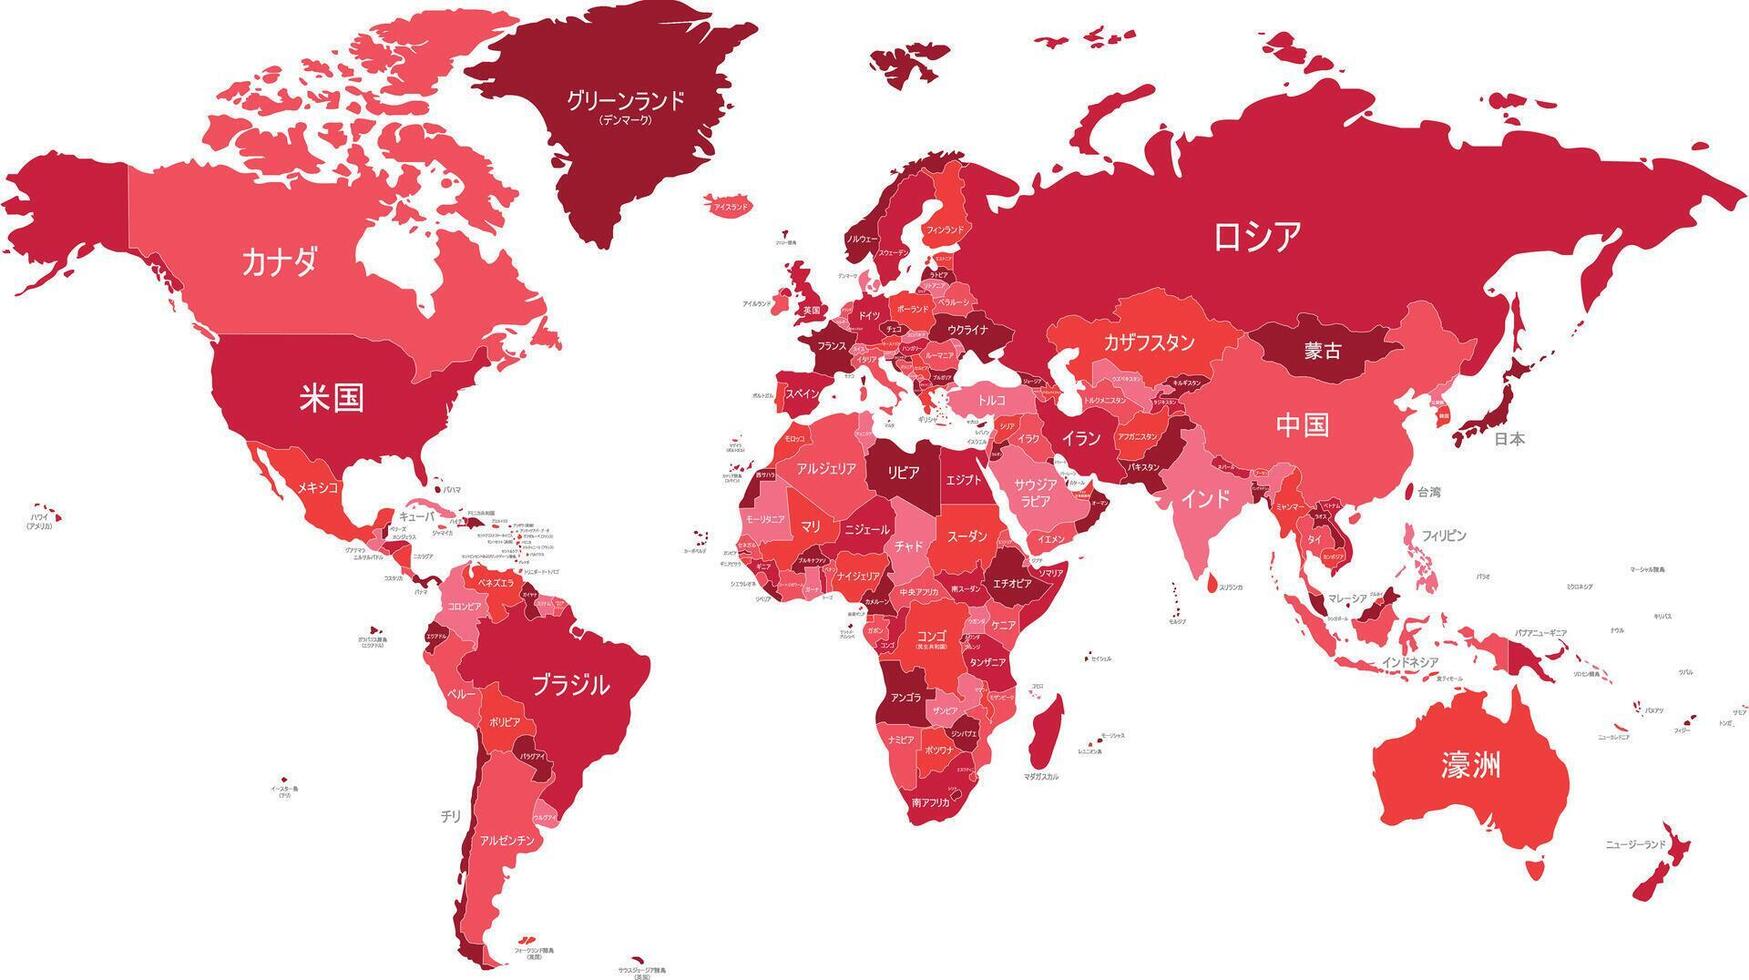 político mundo mapa vector ilustración con diferente tonos de rojo para cada país y país nombres en japonés. editable y claramente etiquetado capas.